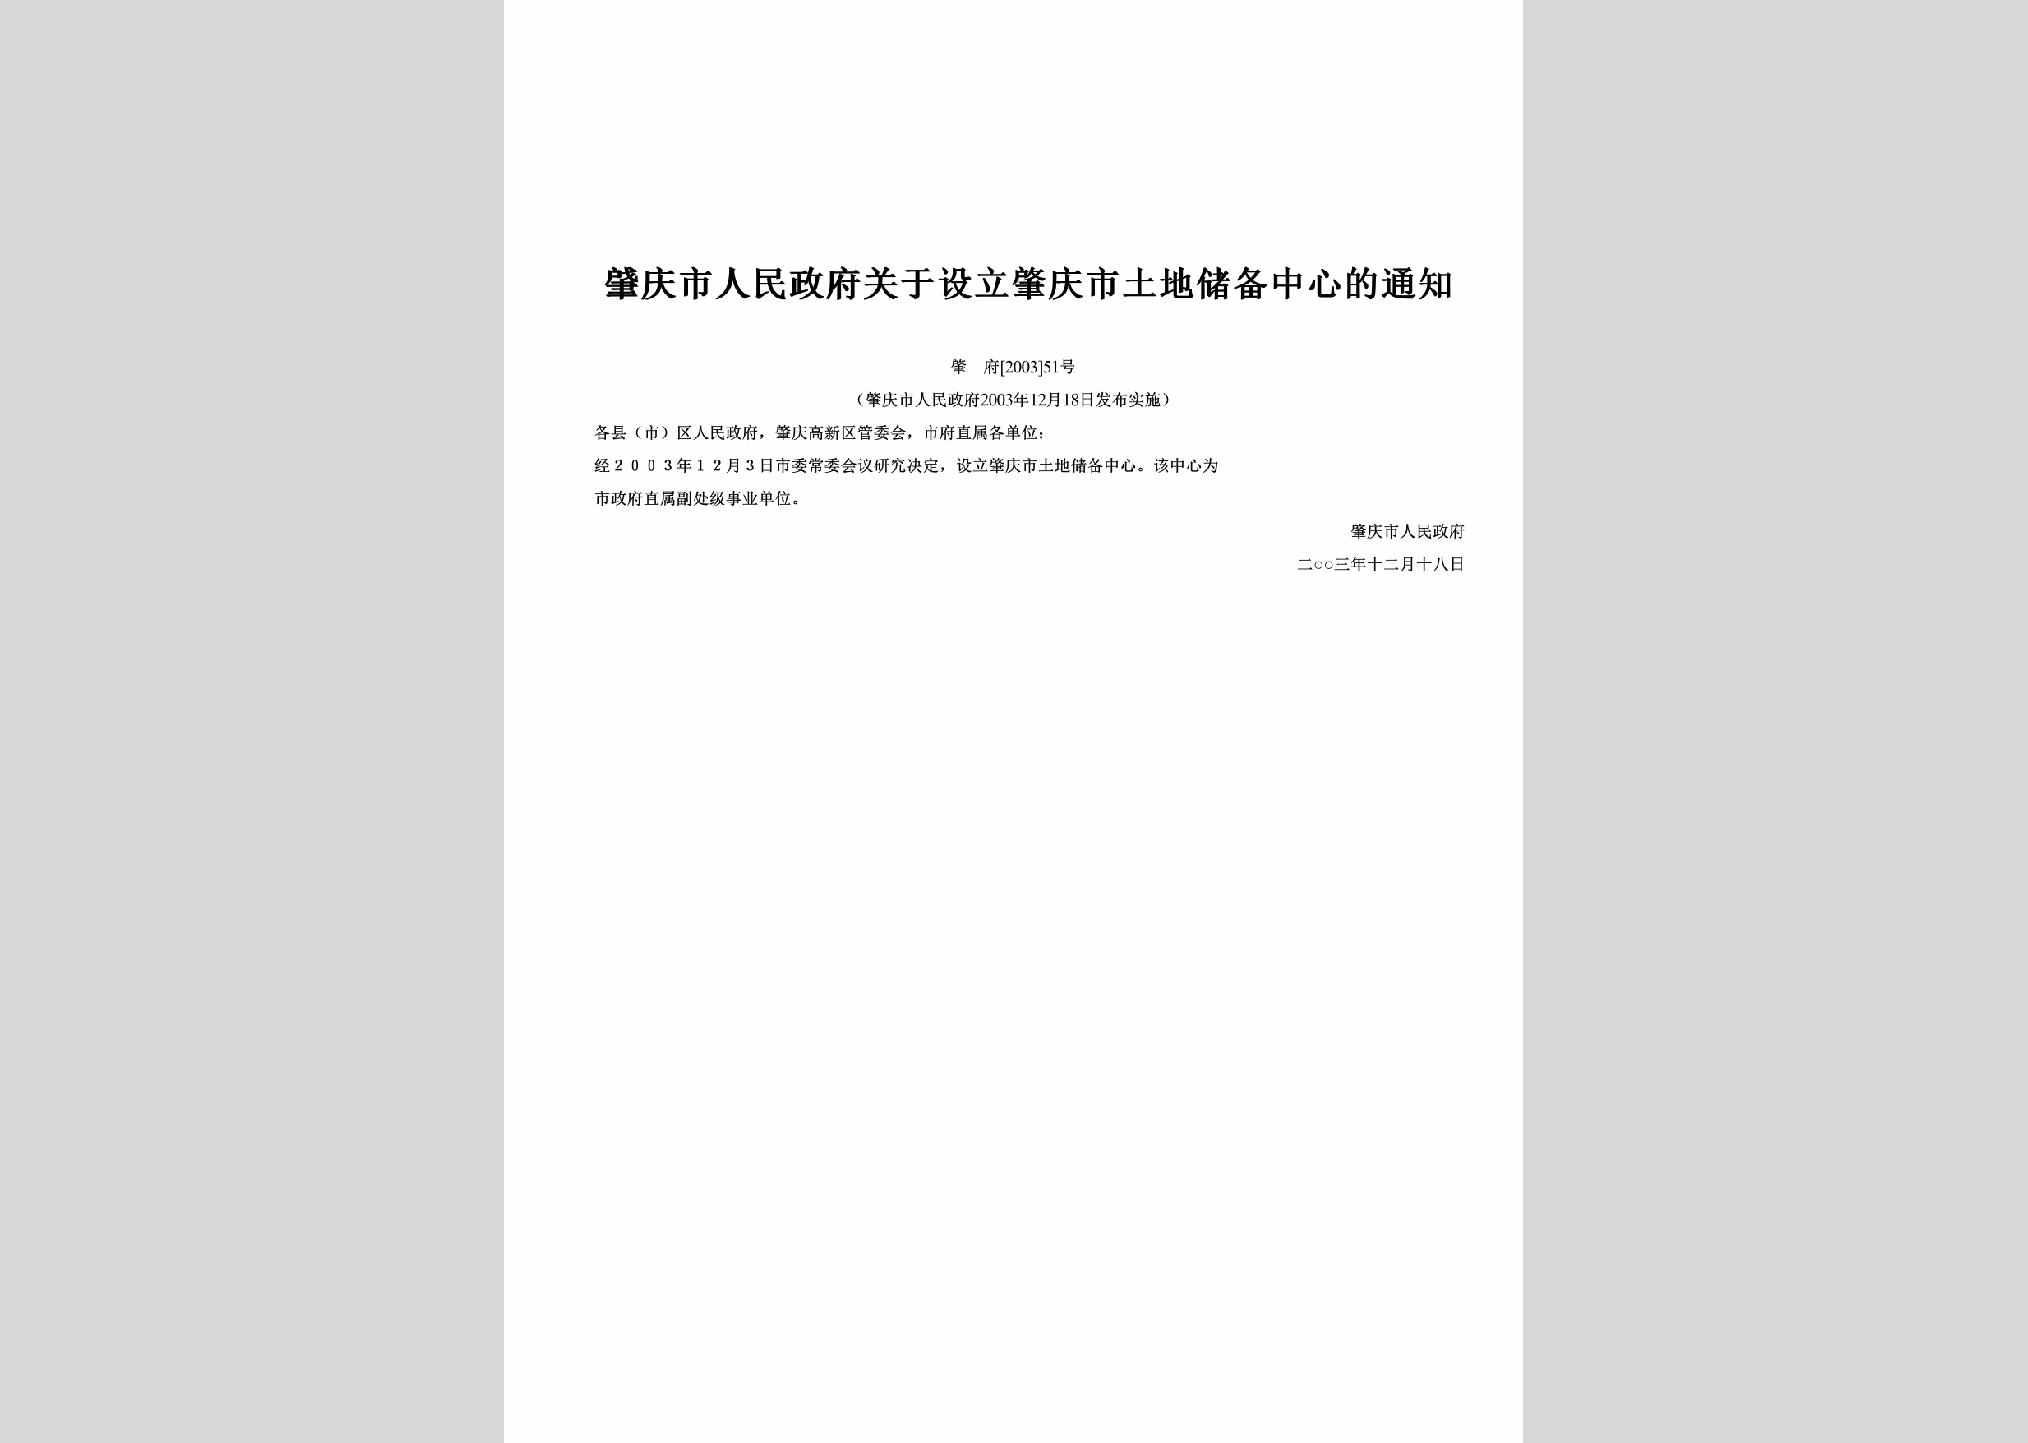 肇府[2003]51号：关于设立肇庆市土地储备中心的通知